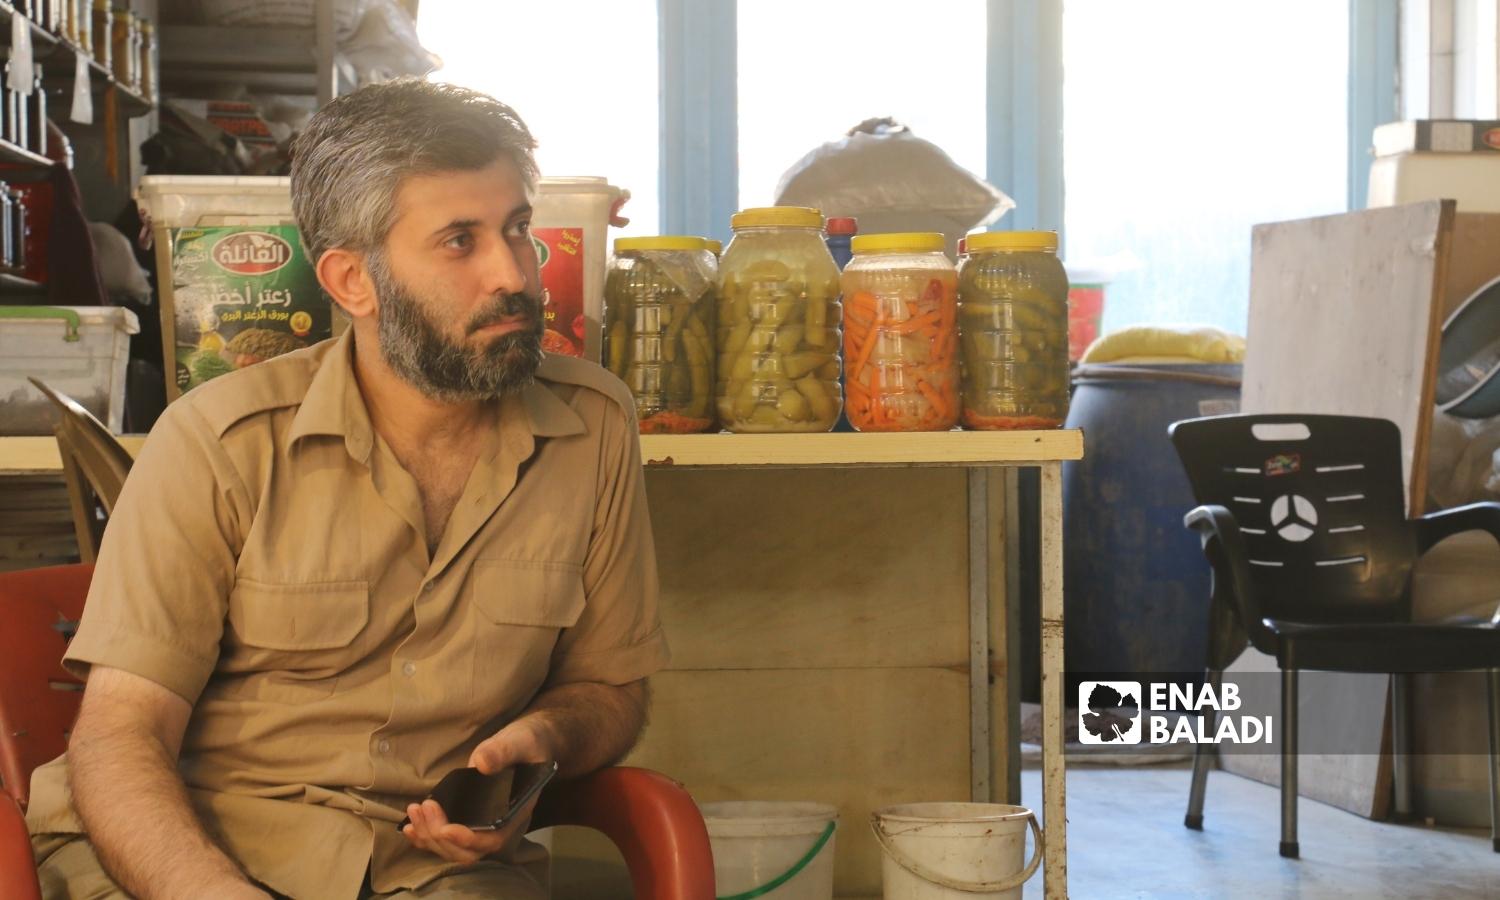  رجل يبيع "المخللات"في السوق المسقوف بمدينة إعزاز بريف حلب الشمالي - 2 أيلول 2022 (عنب بلدي / ديان جنباز)